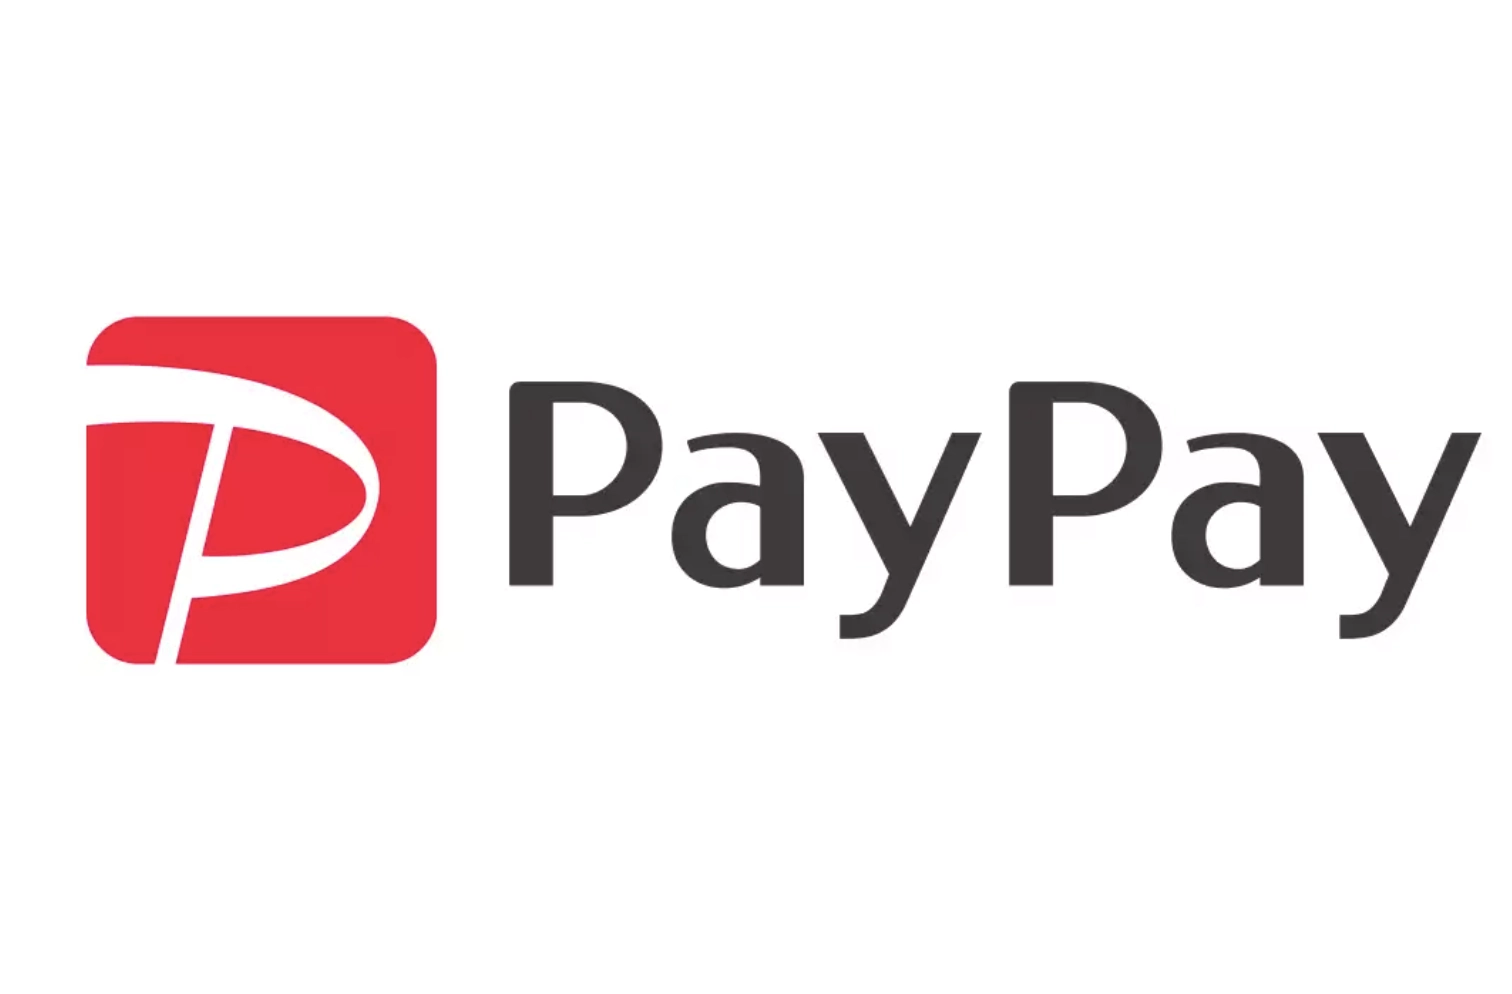 支付应用 PayPay 5 年用户数超 6000 万   成为孙正义下一个 IPO 目标